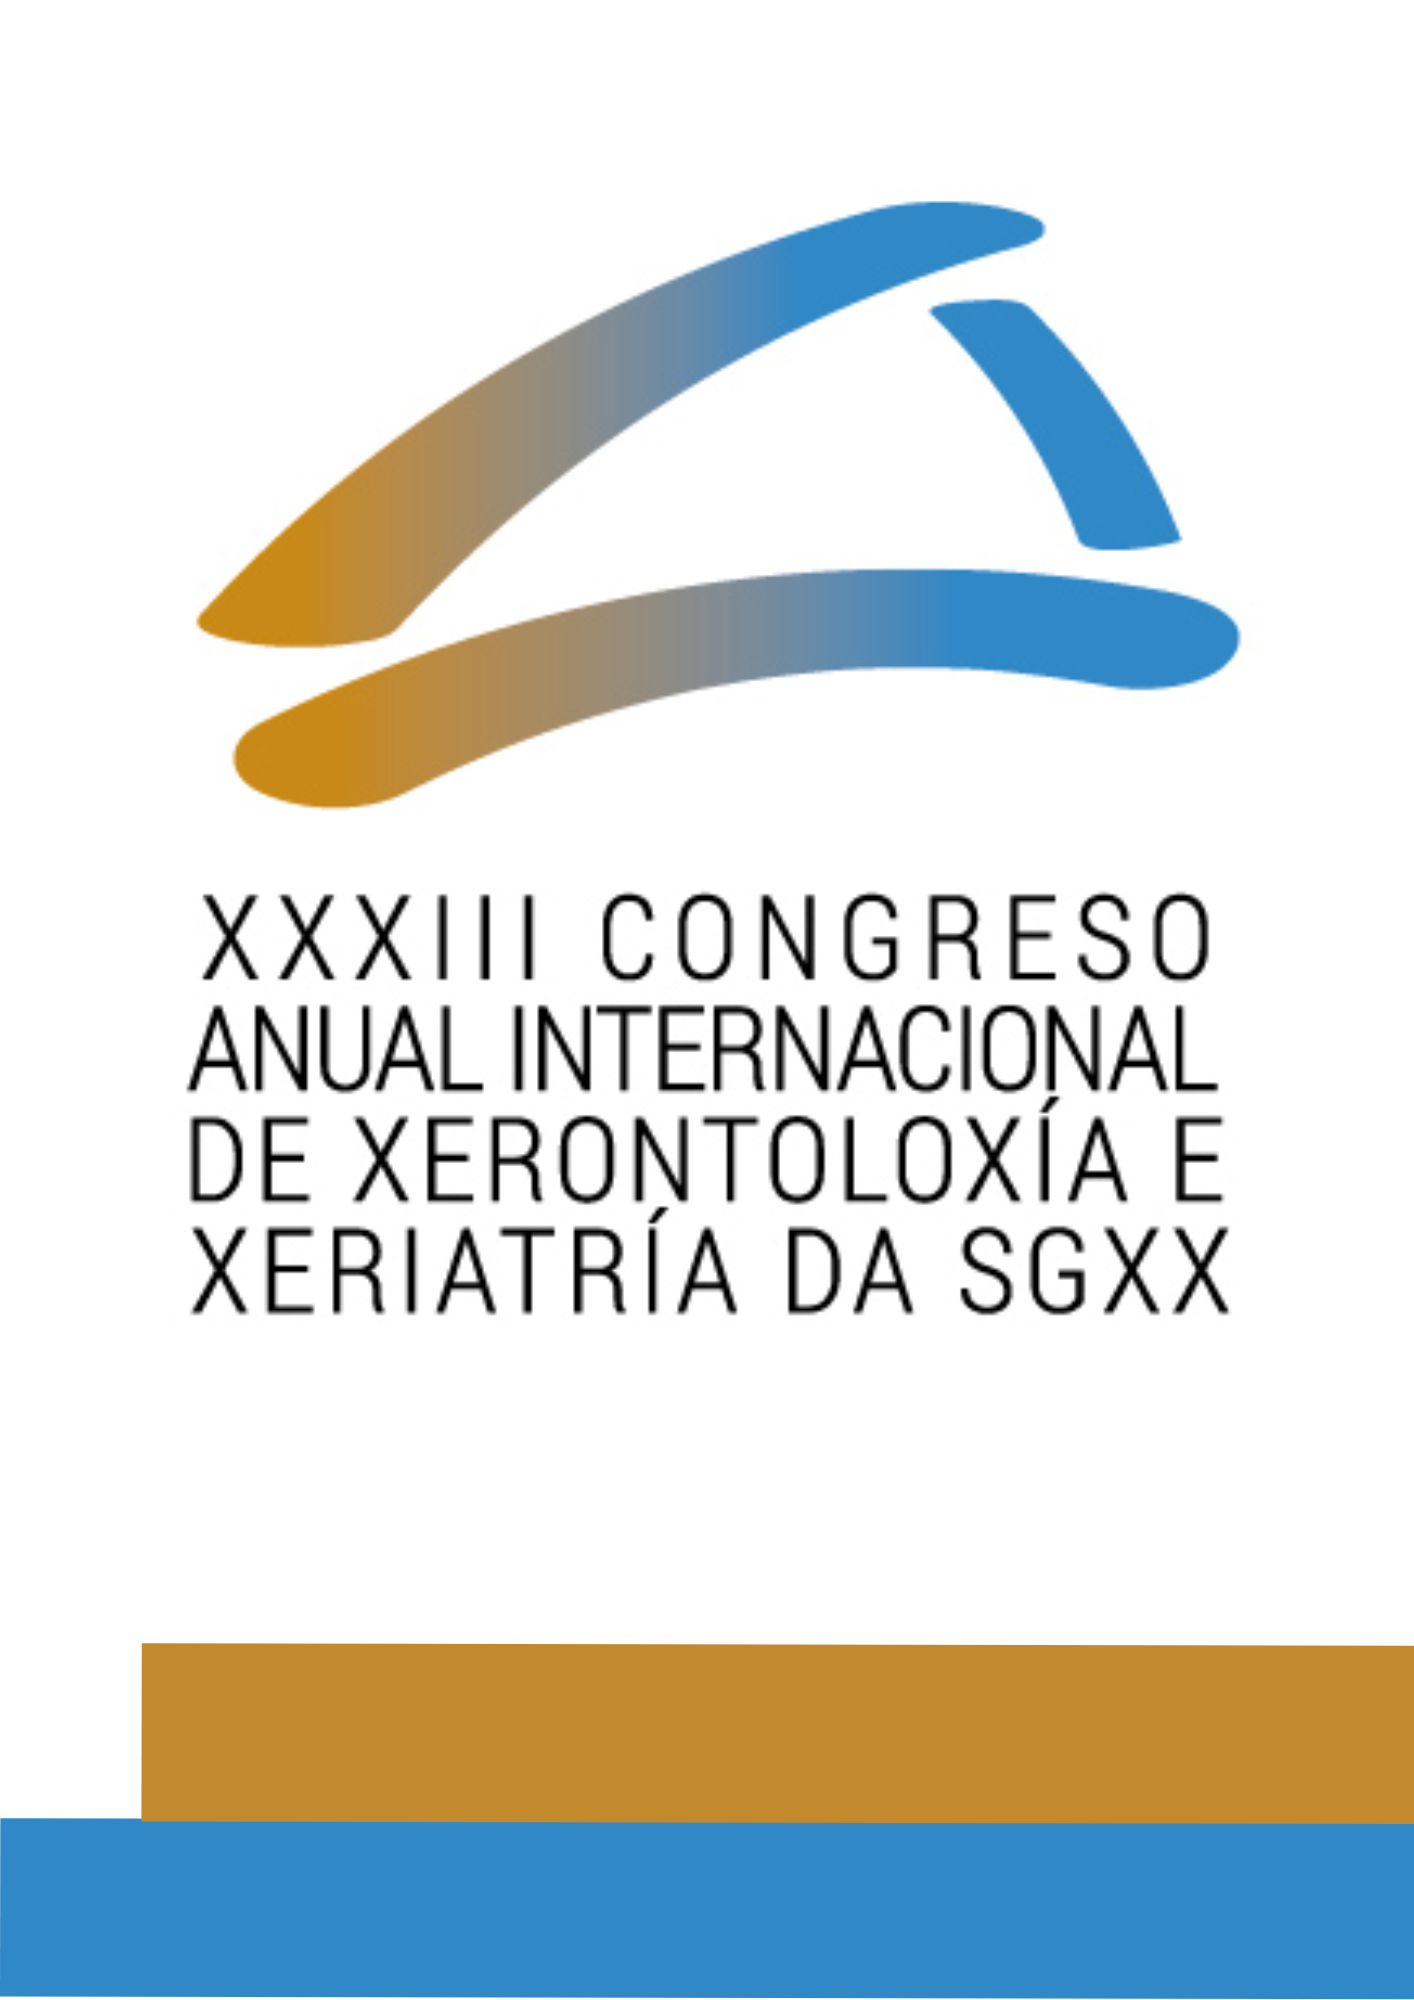 Cartel anunciador Congreso SGXX